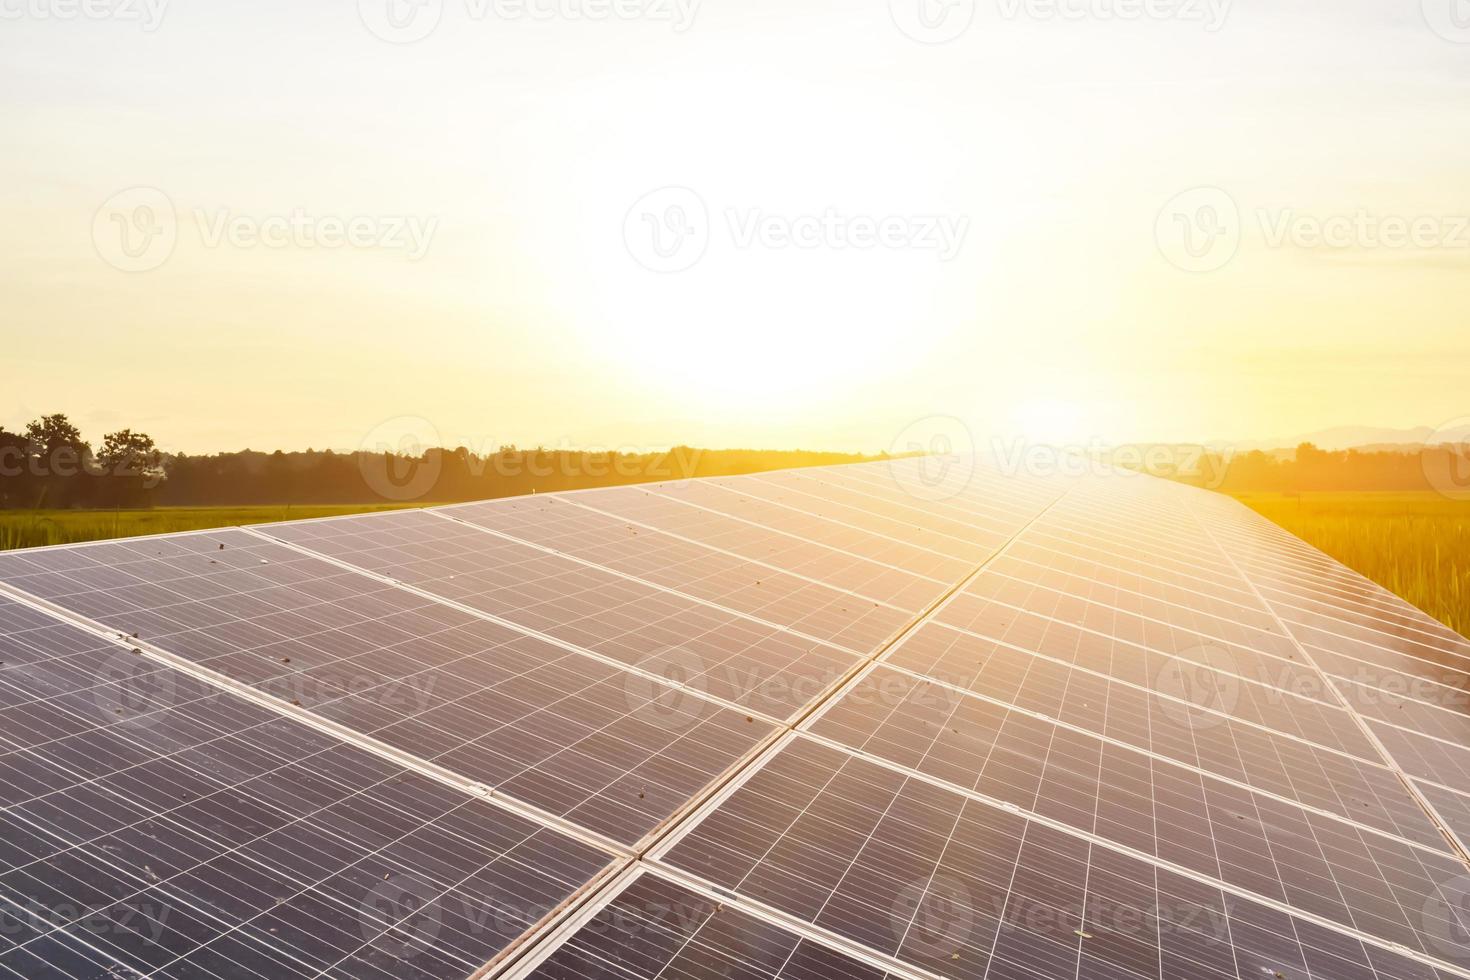 pannello fotovoltaico, nuova tecnologia per conservare e utilizzare l'energia della natura con la vita umana, l'energia sostenibile e il concetto di amico ambientale. foto